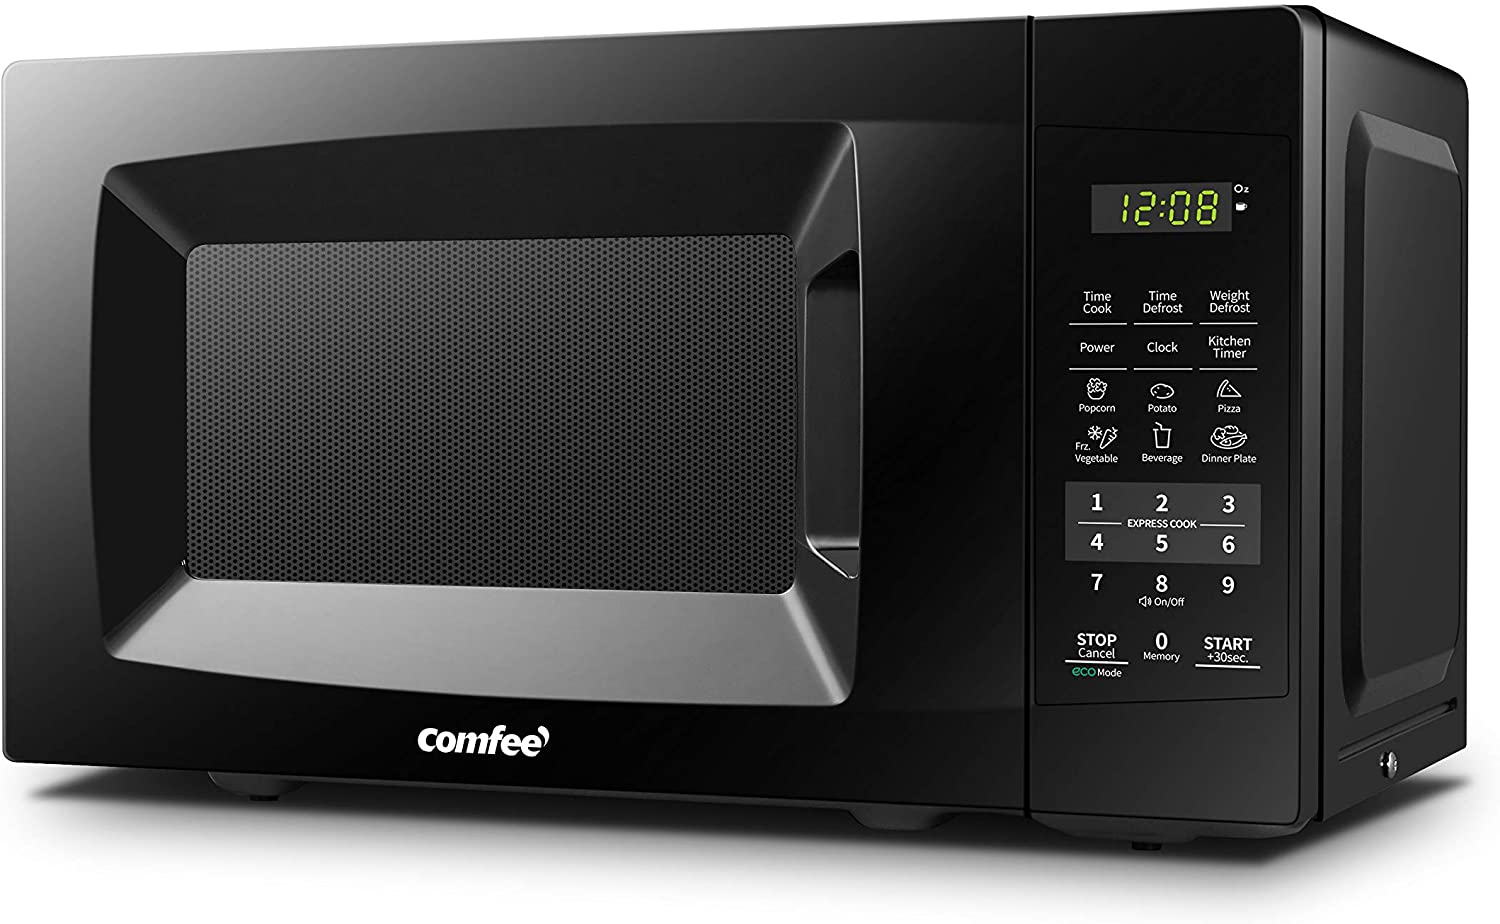 COMFEE’ Portable Energy Saving Microwave Oven, 700-Watt